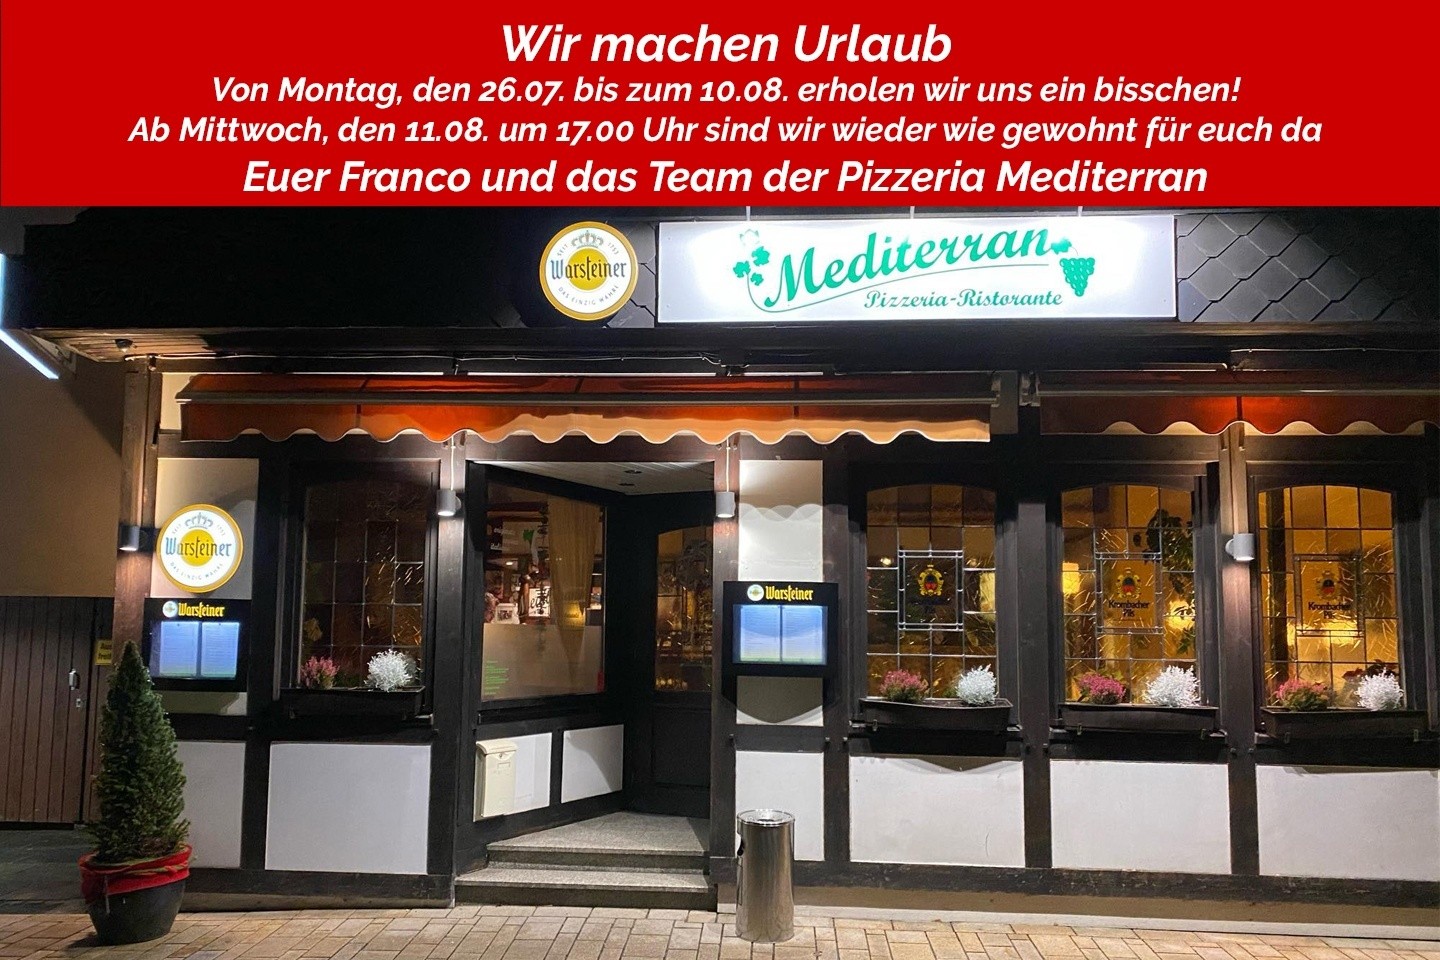 Pizzeria Mediterran bei Franco: Urlaub von Montag, den 26.07. - Dienstag, den 10.08.2021